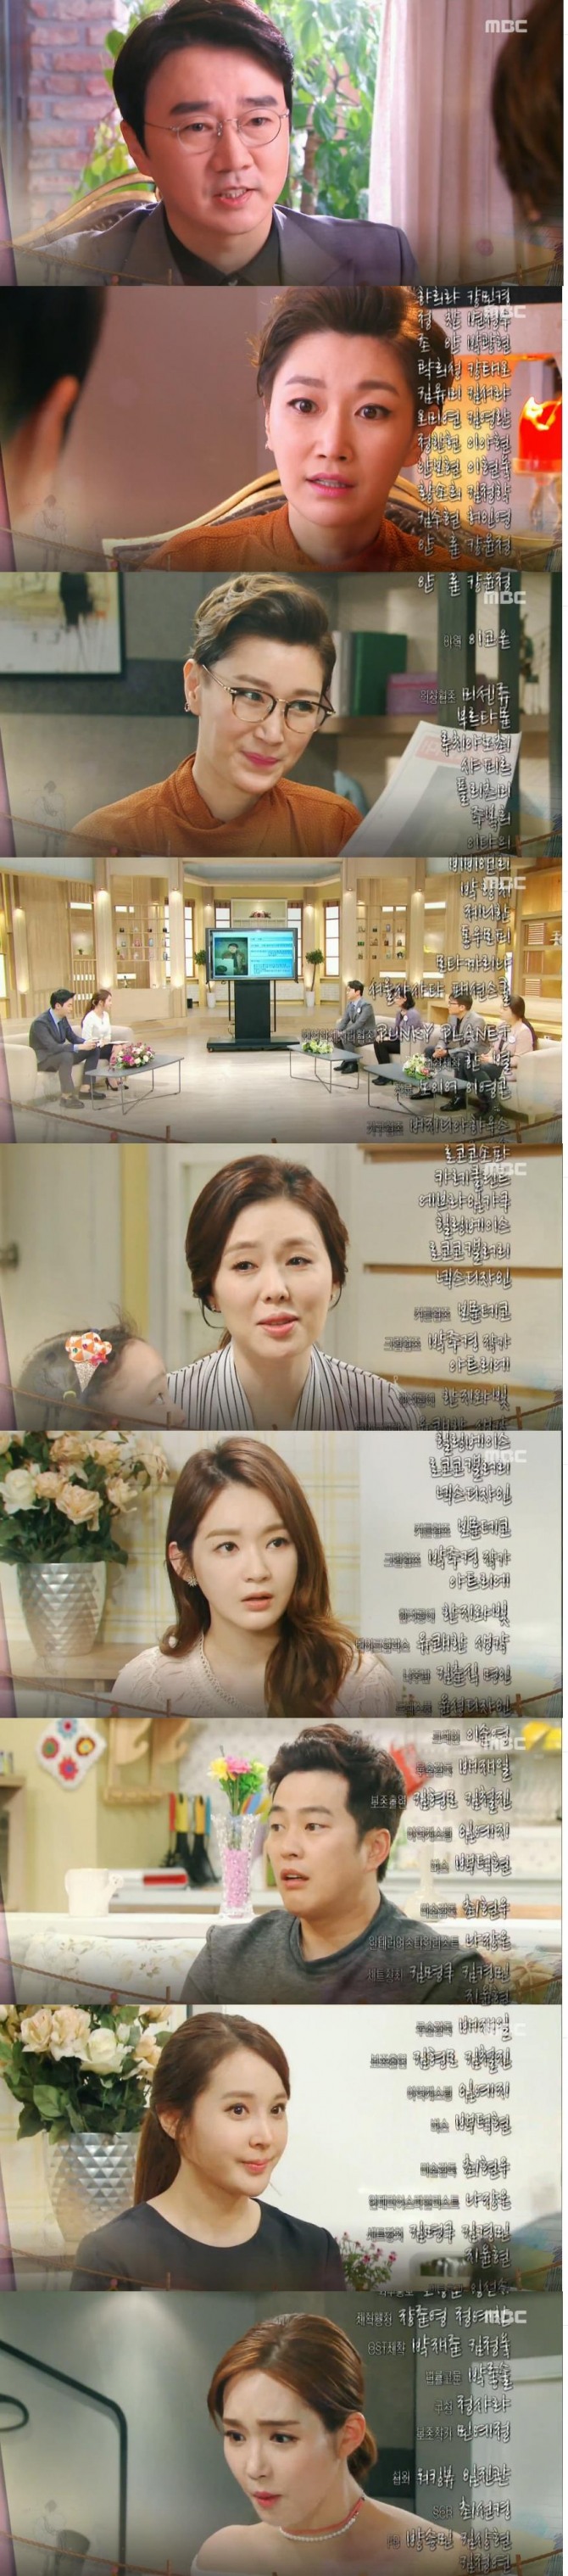 3일 밤 방송되는 MBC 저녁 일일드라마 '최고의 연인'에서는 장 폴(김정학)이 애타게 찾는 가족이 나보배(하희라)라는 반전이 예고된다./사진=MBC 방송 캡처